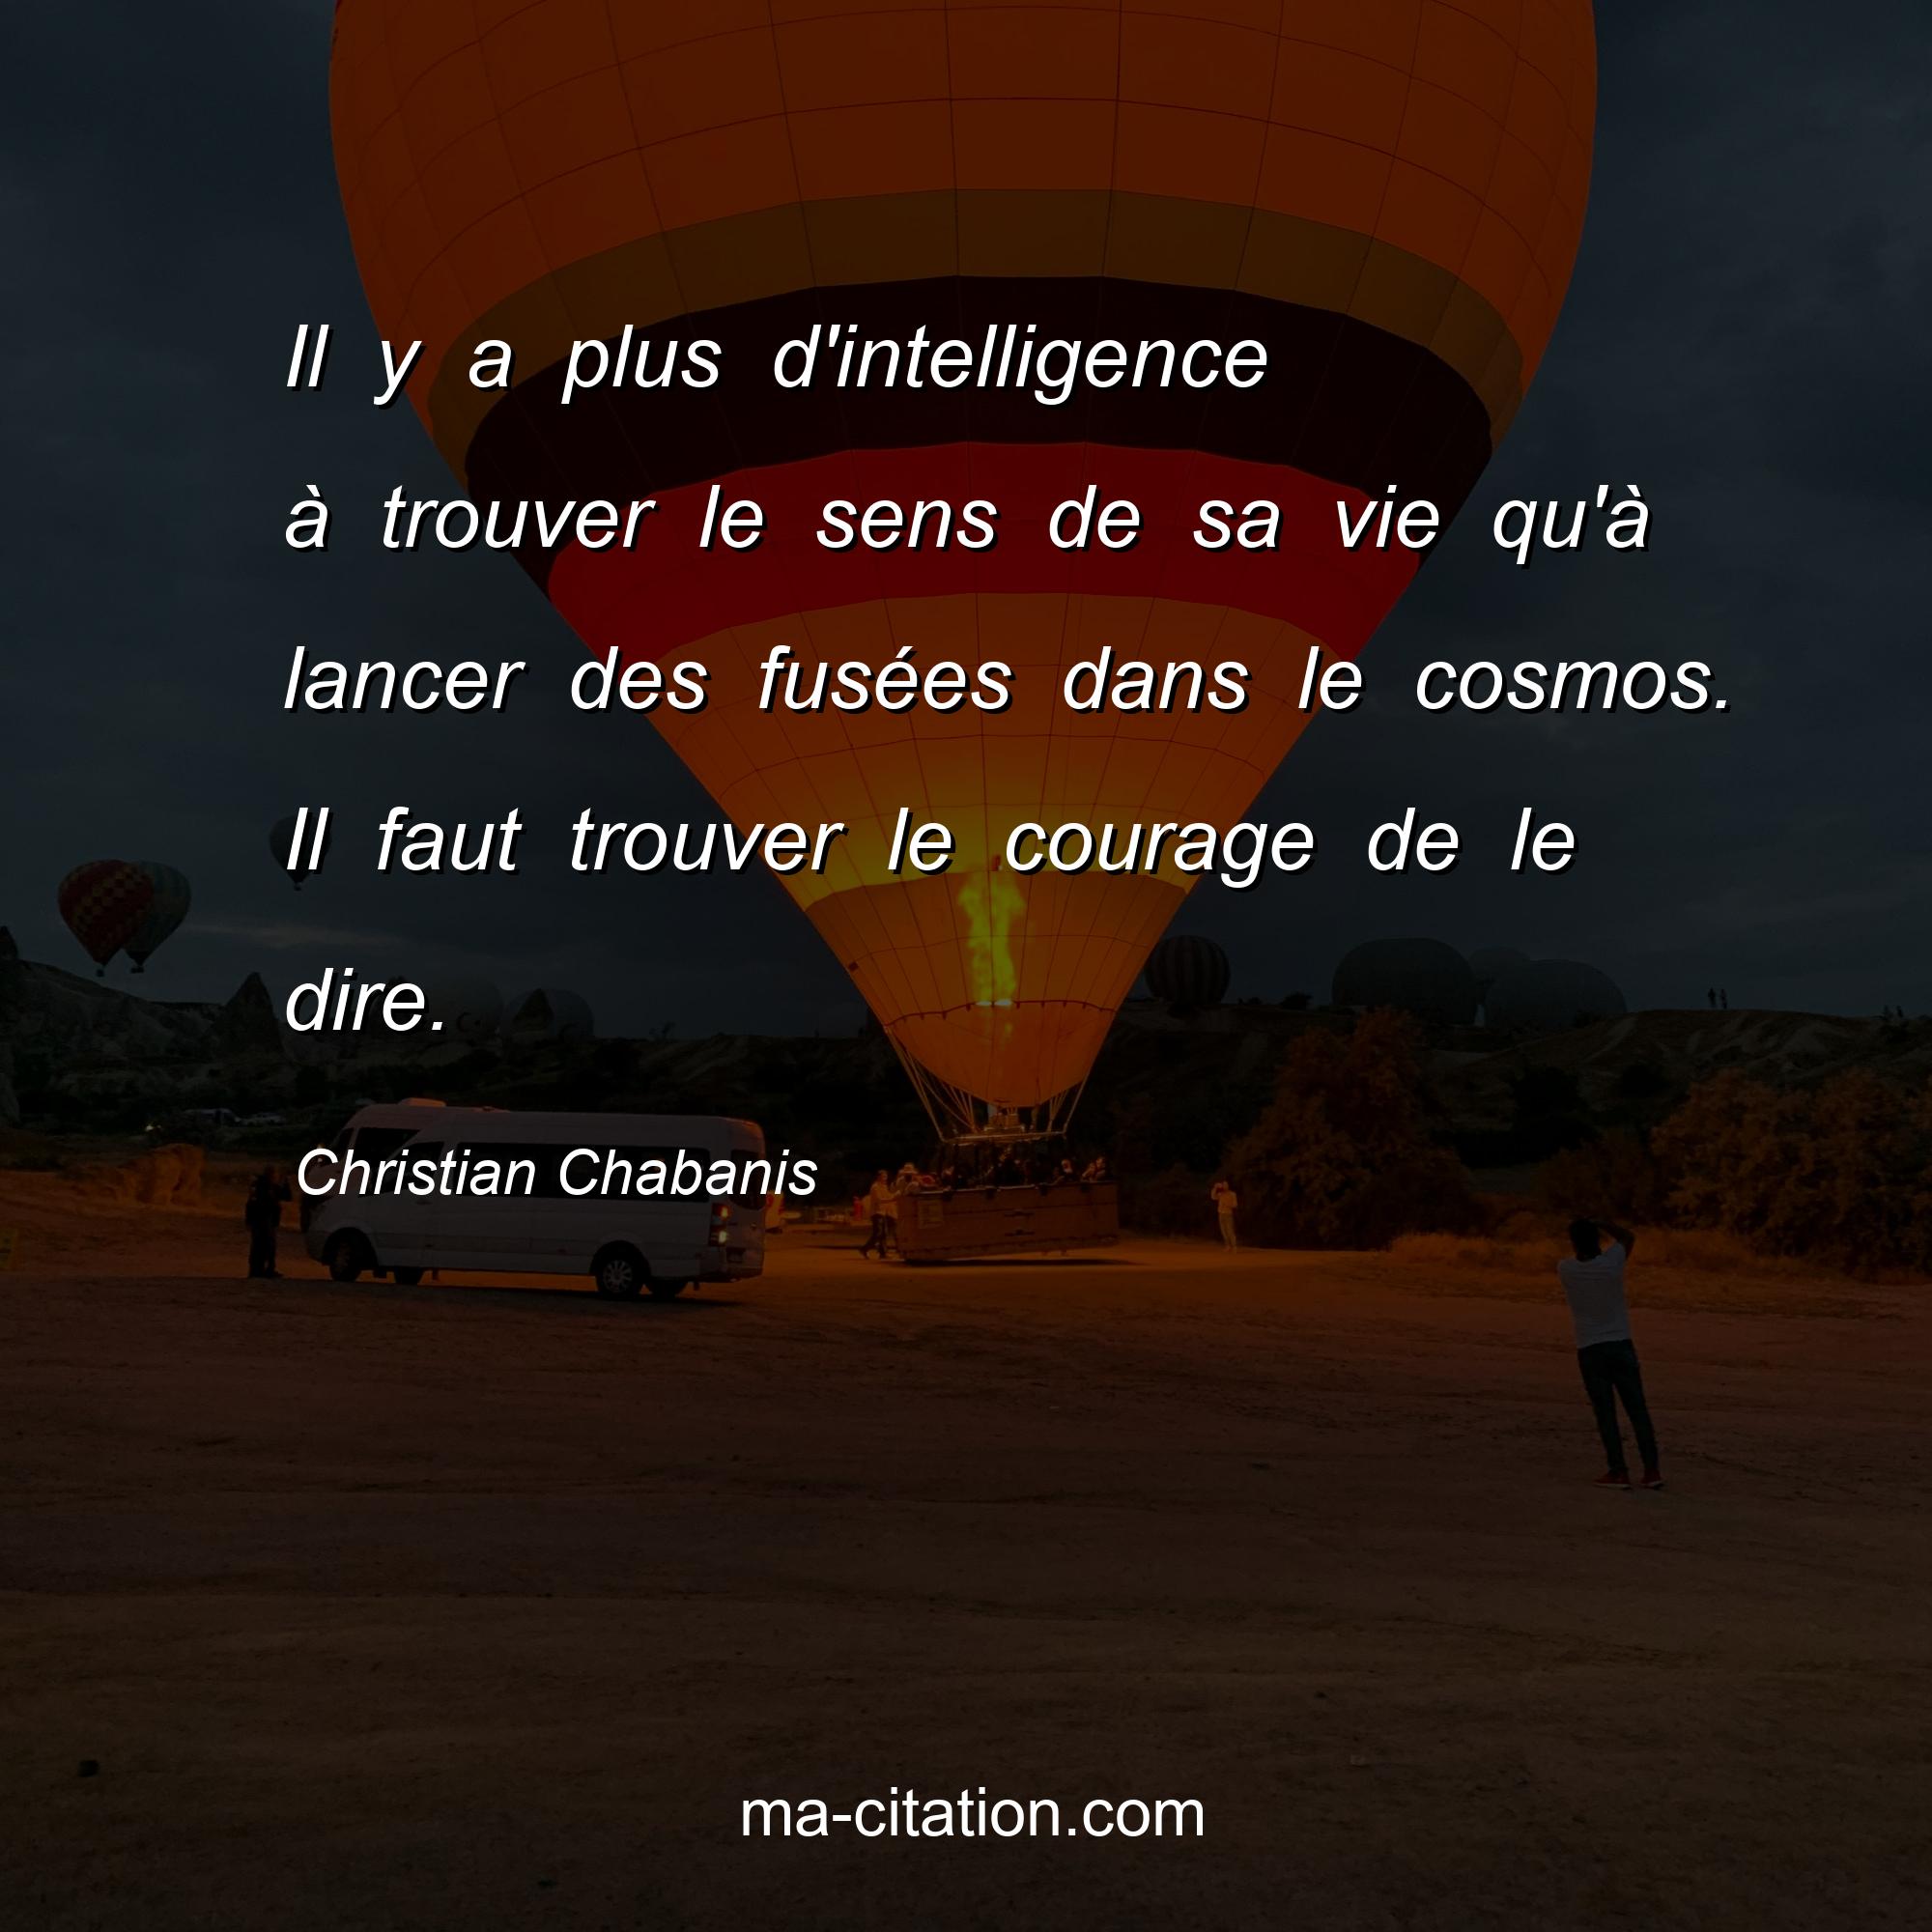 Christian Chabanis : Il y a plus d'intelligence à trouver le sens de sa vie qu'à lancer des fusées dans le cosmos. Il faut trouver le courage de le dire.